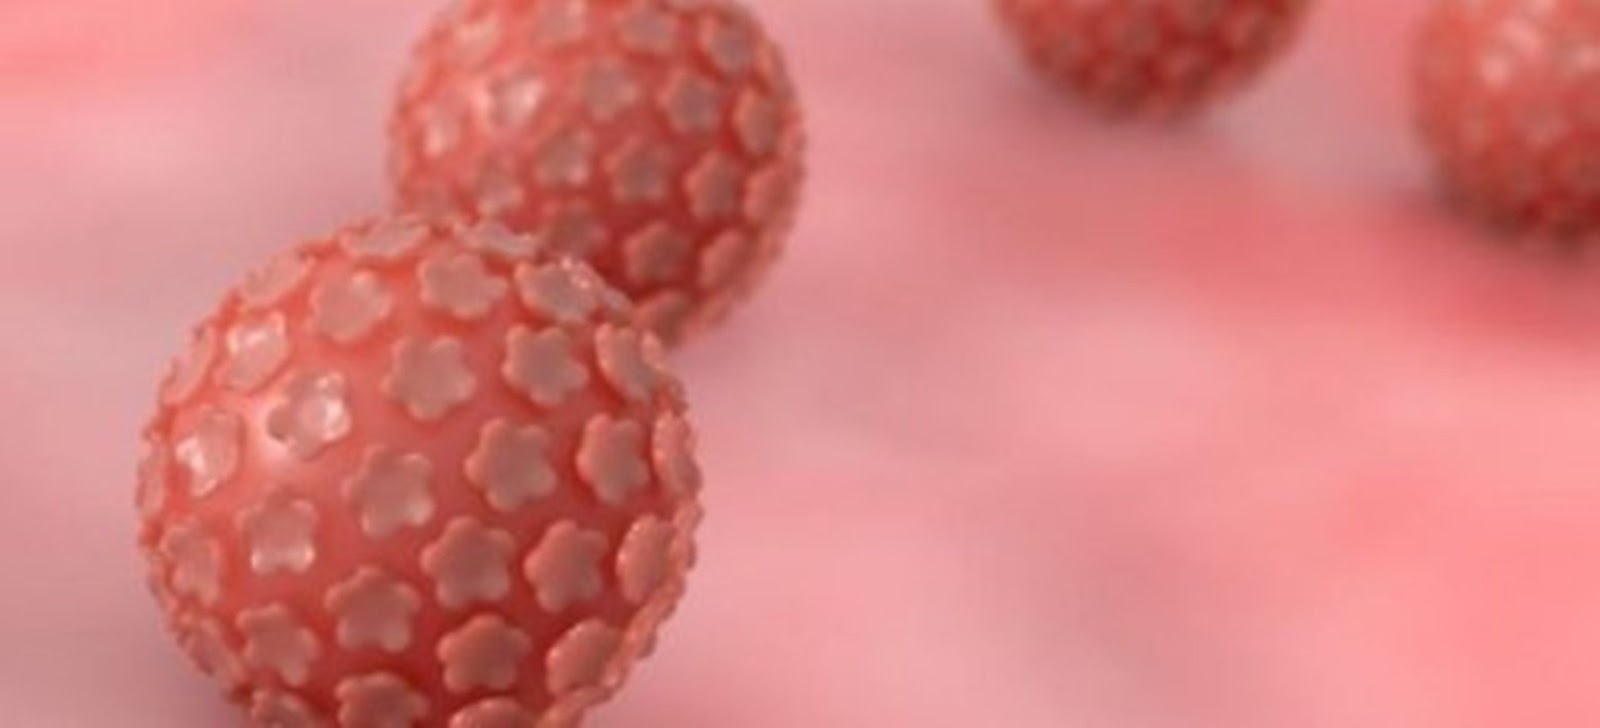 Ιός HPV και Κονδυλώματα: μύθοι και αλήθειες